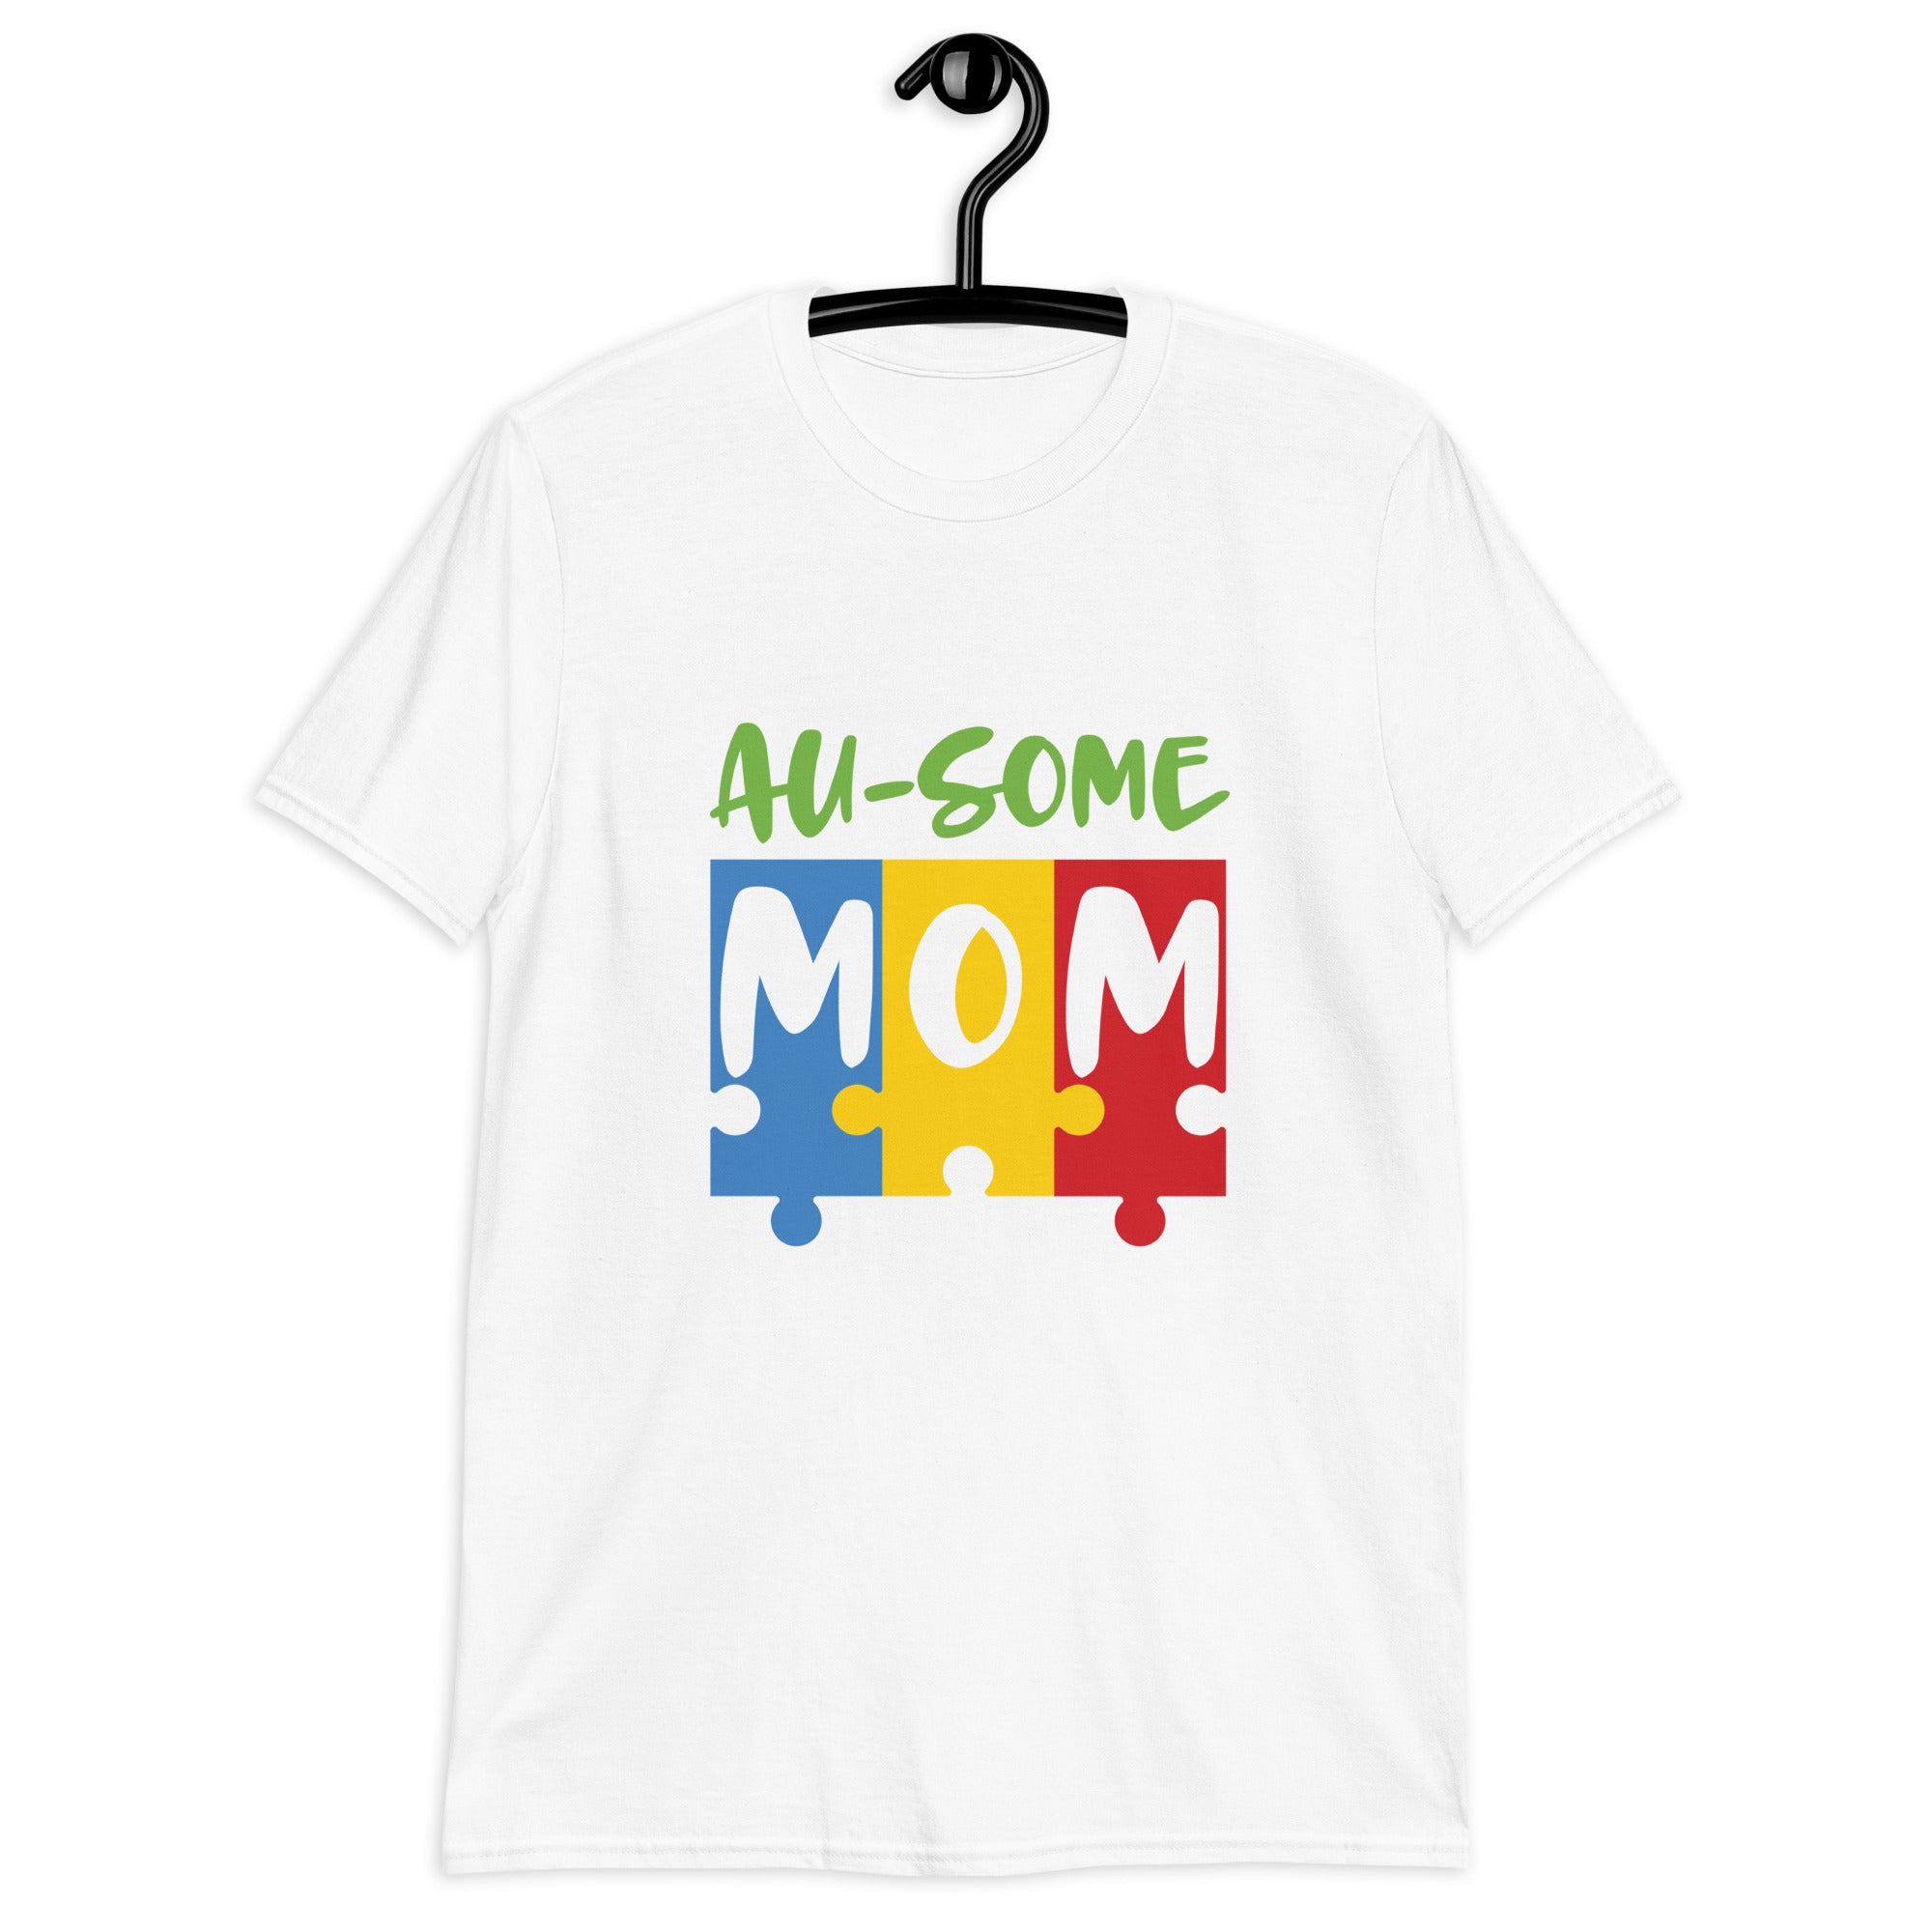 Short-Sleeve Unisex T-Shirt- Ausome Mom